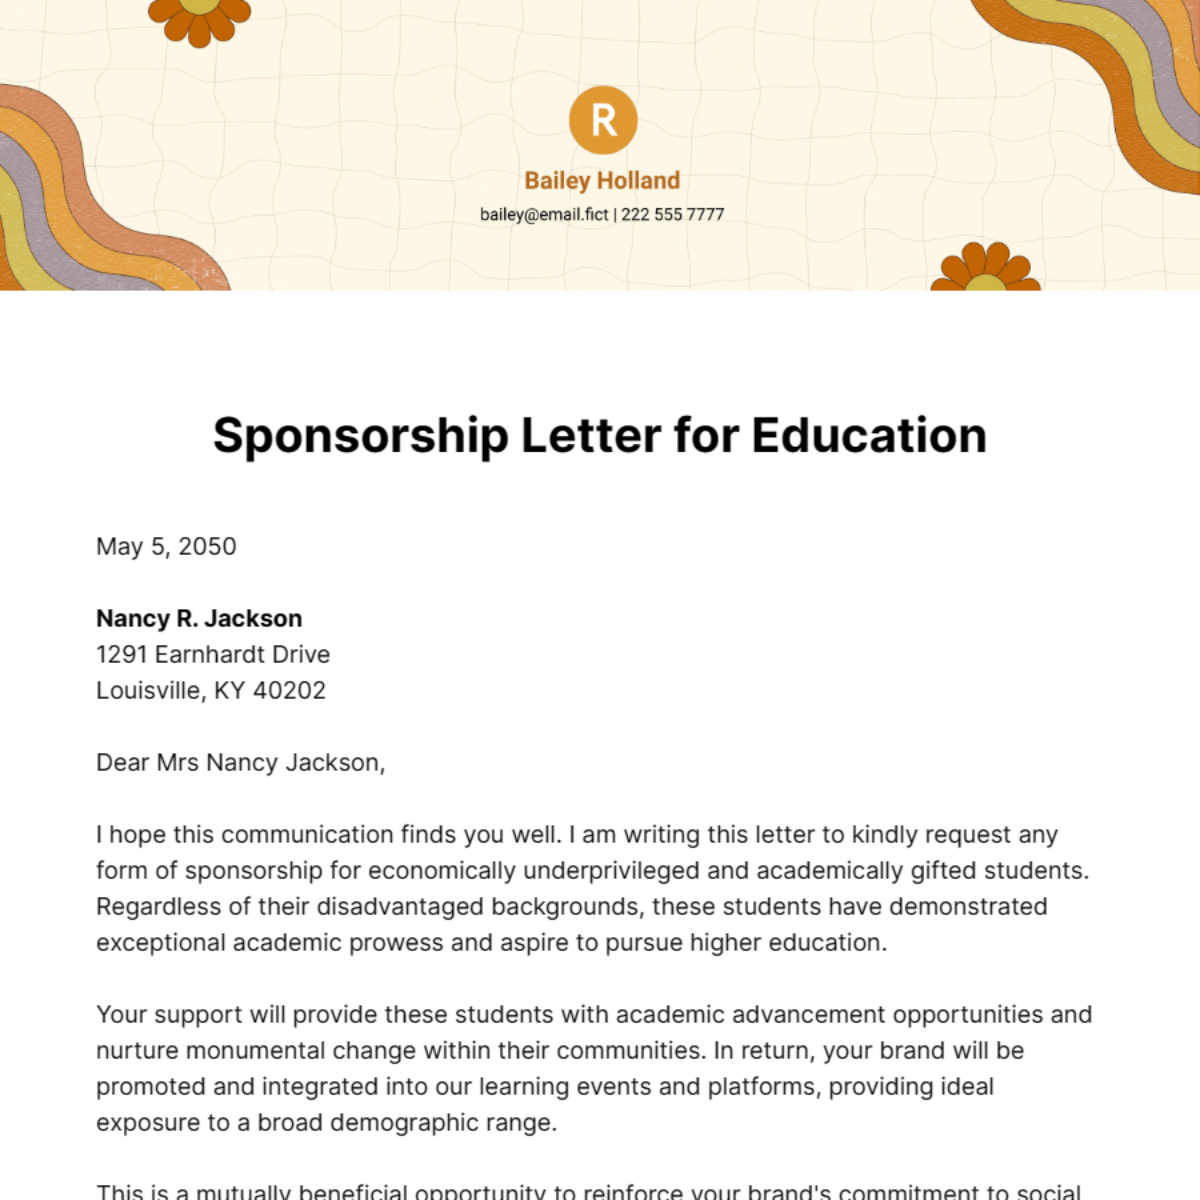 Sponsorship Letter for Education Template